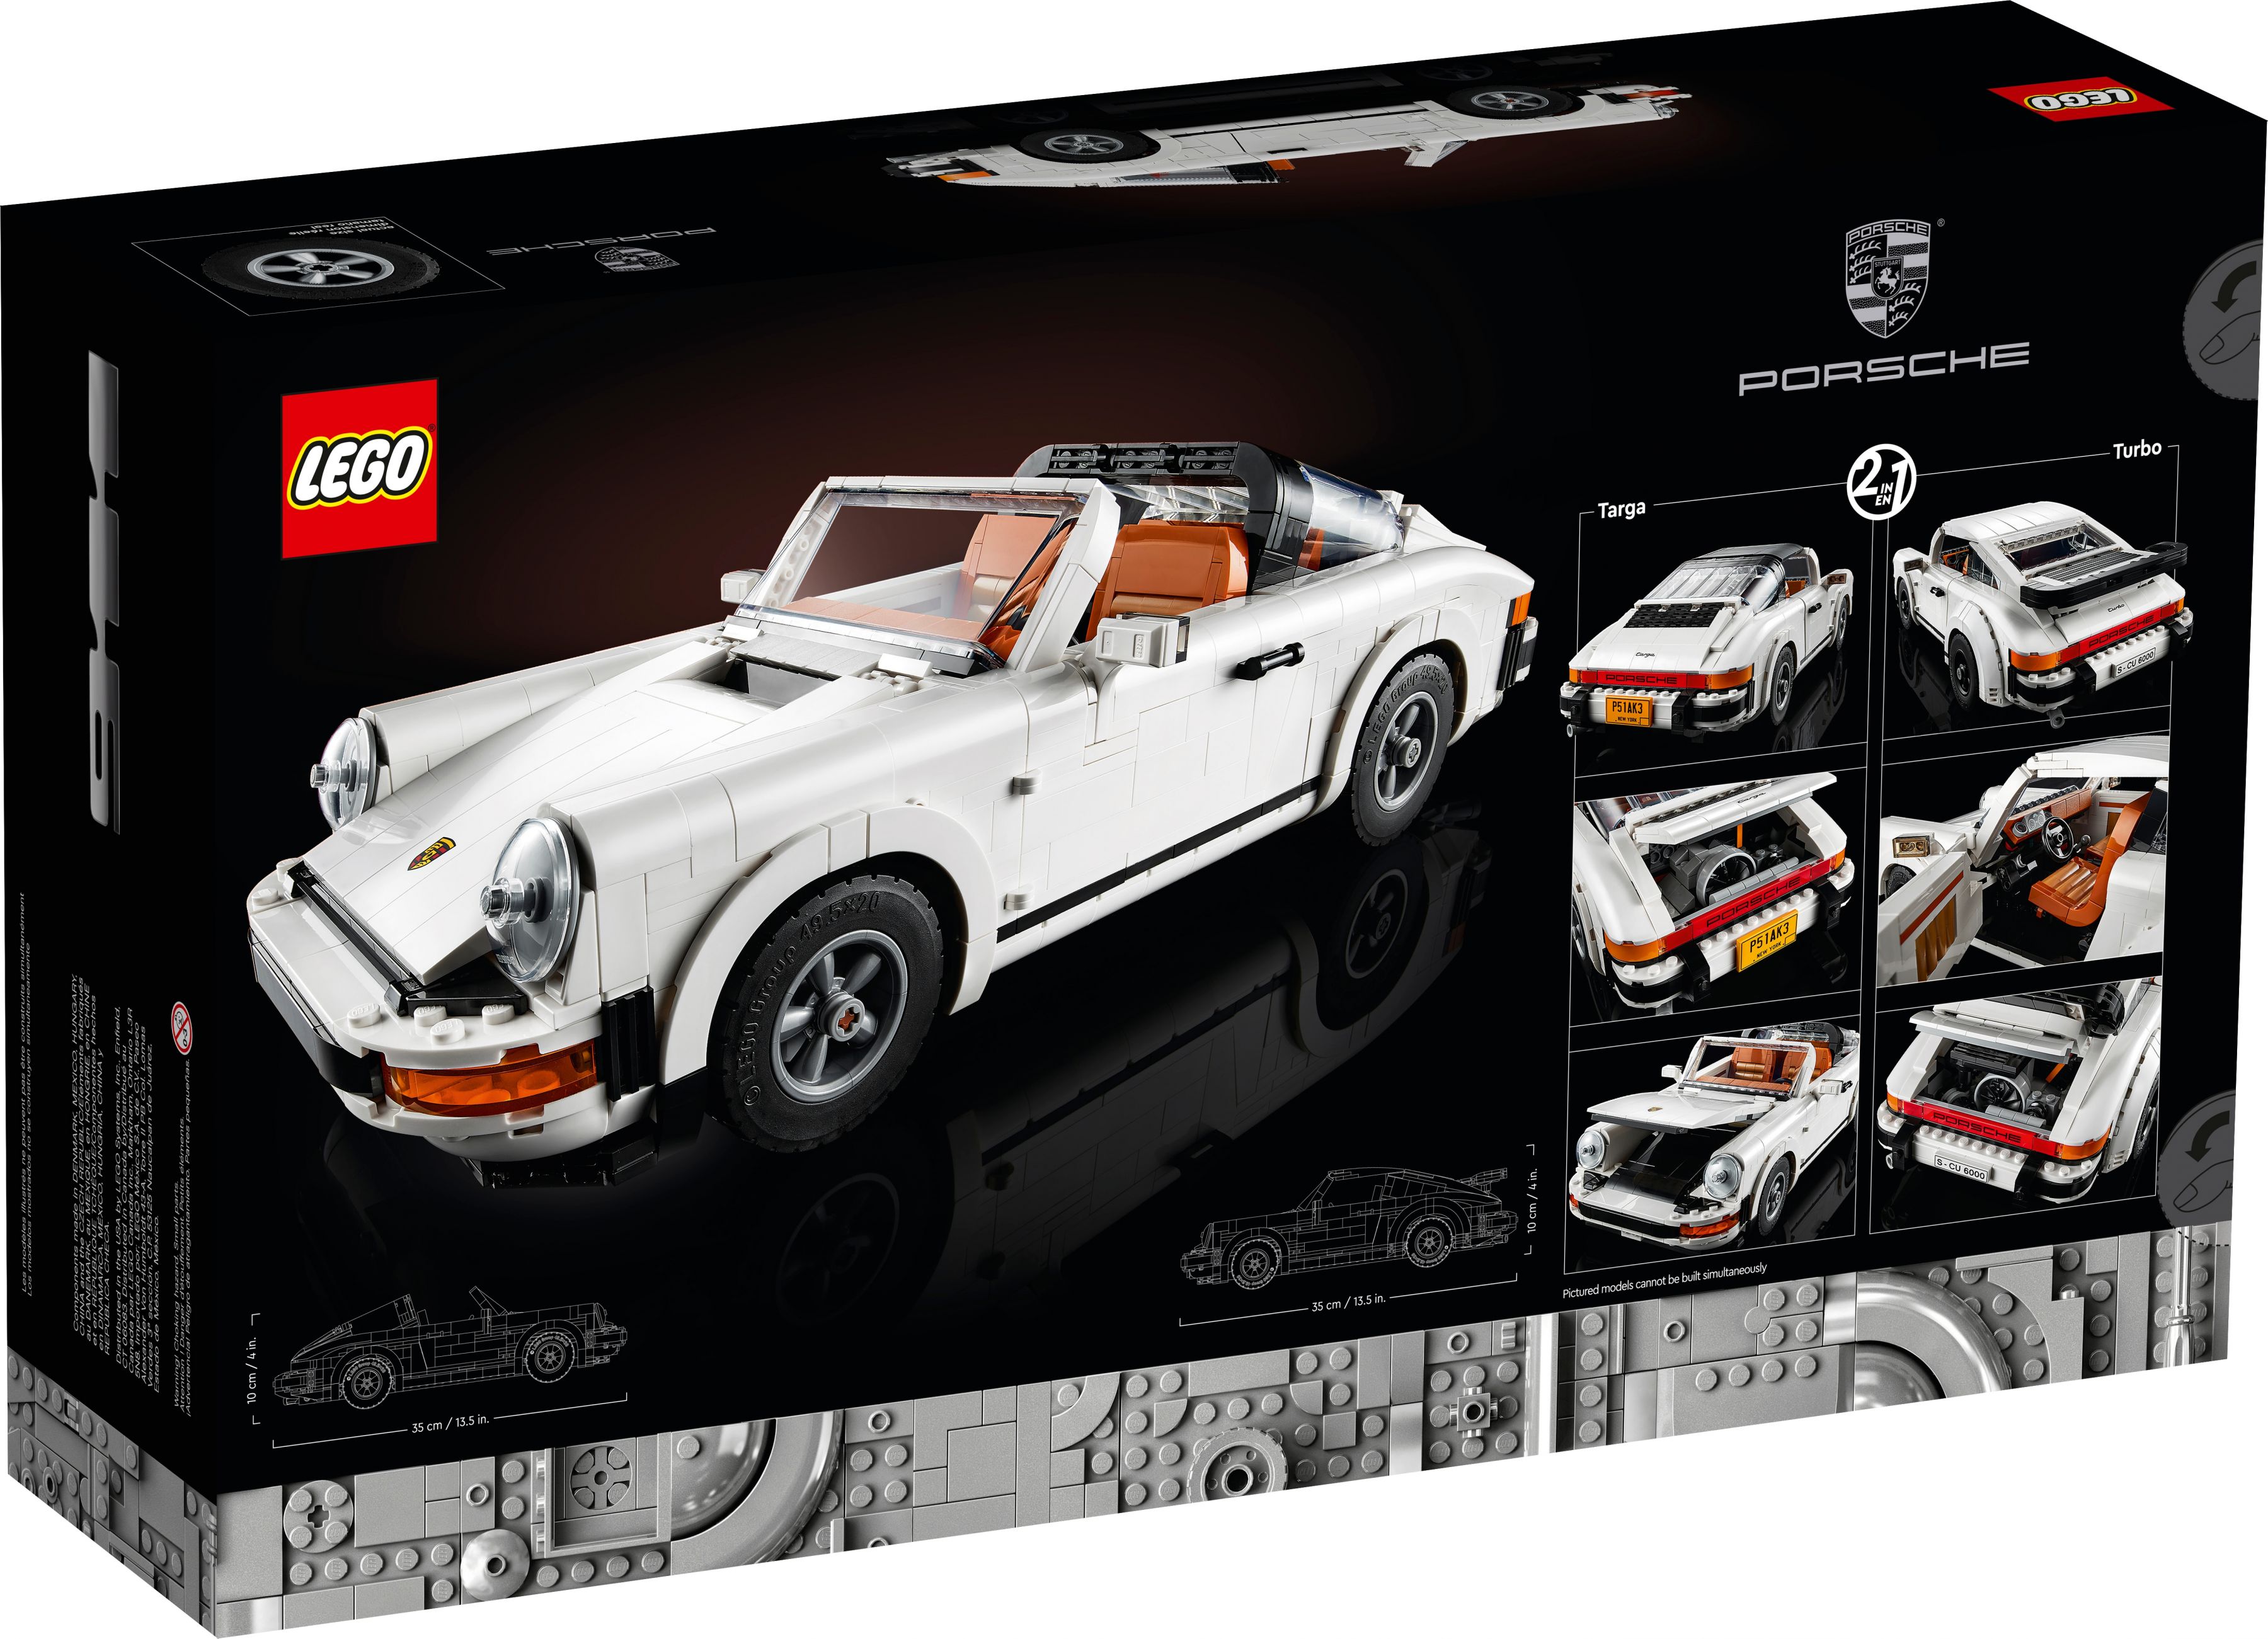 LEGO Advanced Models 10295 Porsche 911 LEGO_10295_alt15.jpg